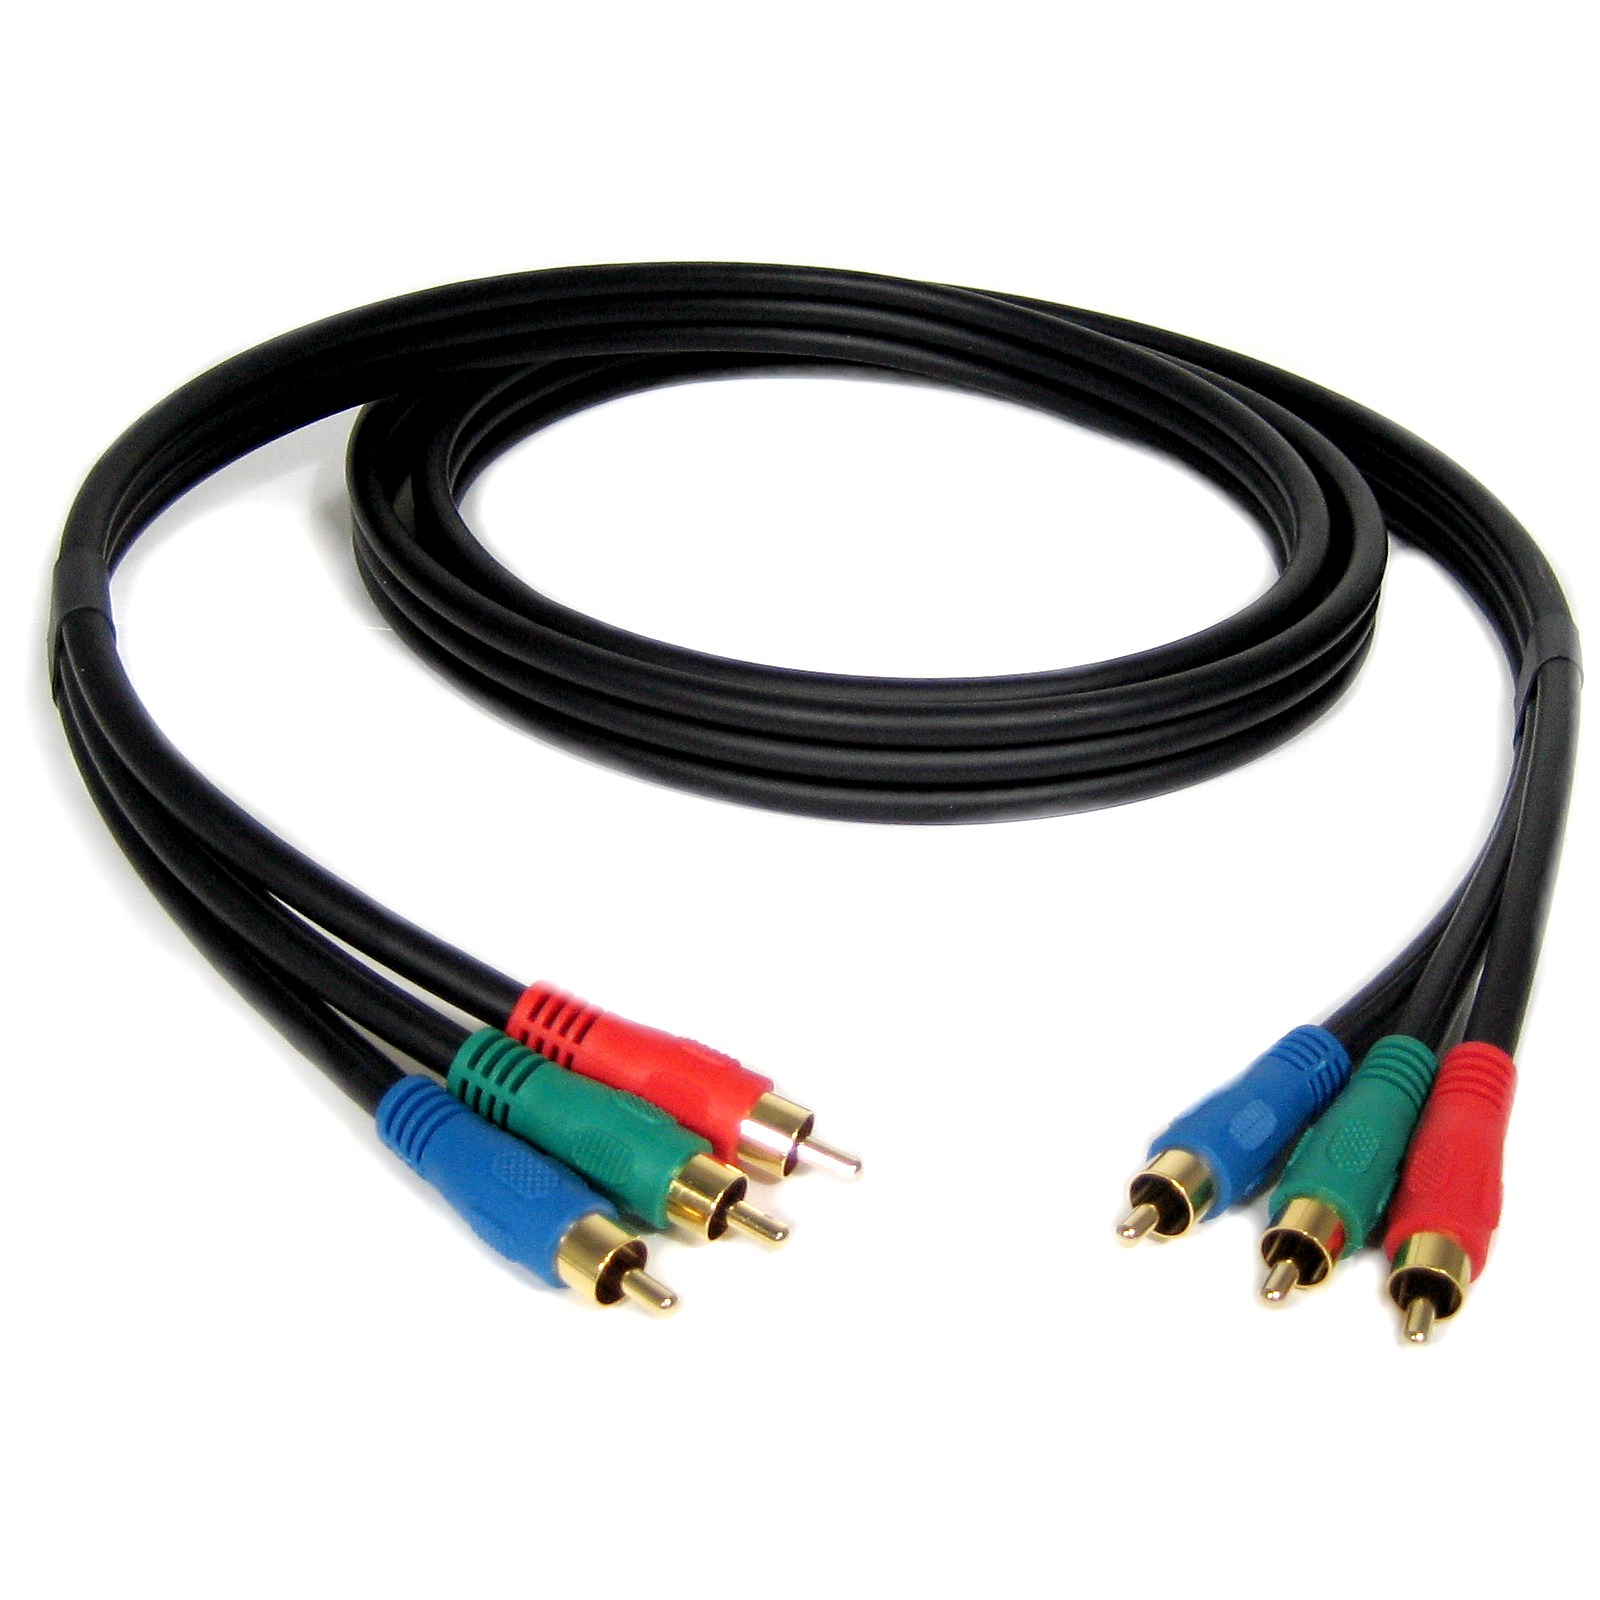 Компонентный. Кабель 3rca синий. RCA кабель зелёный красный синий. Компонентный RGB кабель. RCA Ultralink.